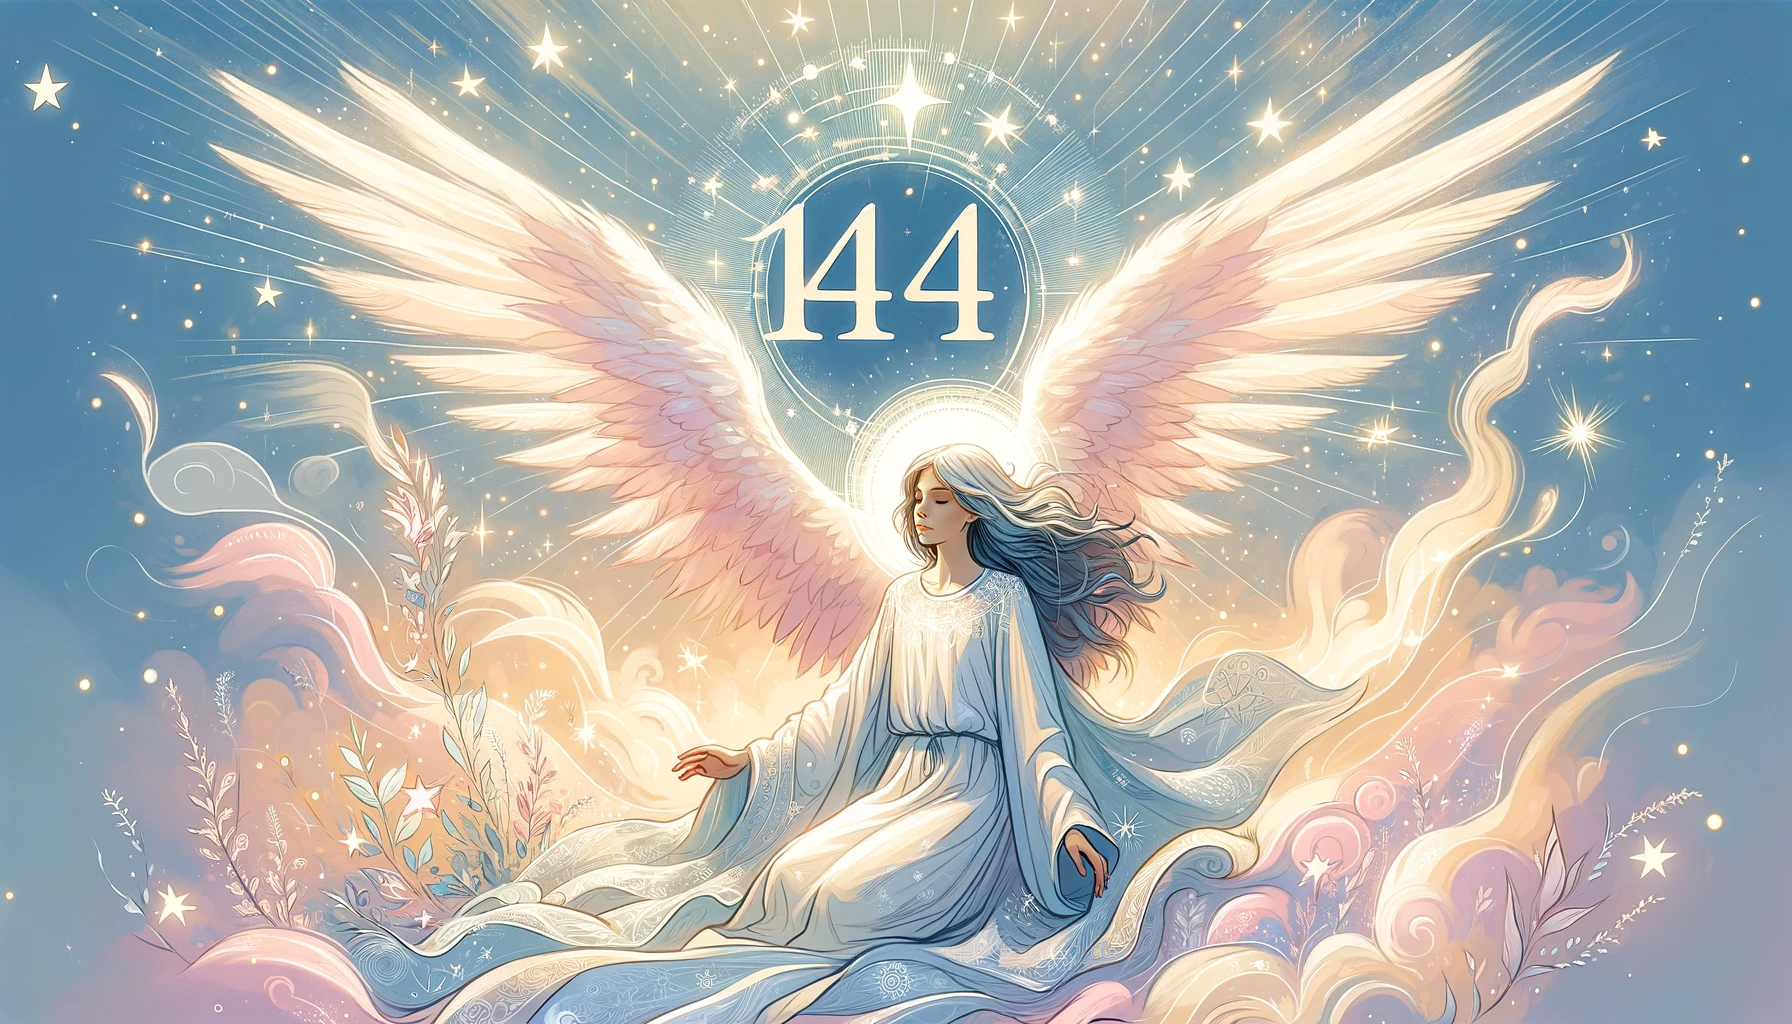 「エンジェルナンバー144の意味・前兆」というテーマに基づいて作成したアイキャッチ画像です。天使の存在と数字「144」を通じて導きと保護を象徴するデザインを採用しています。